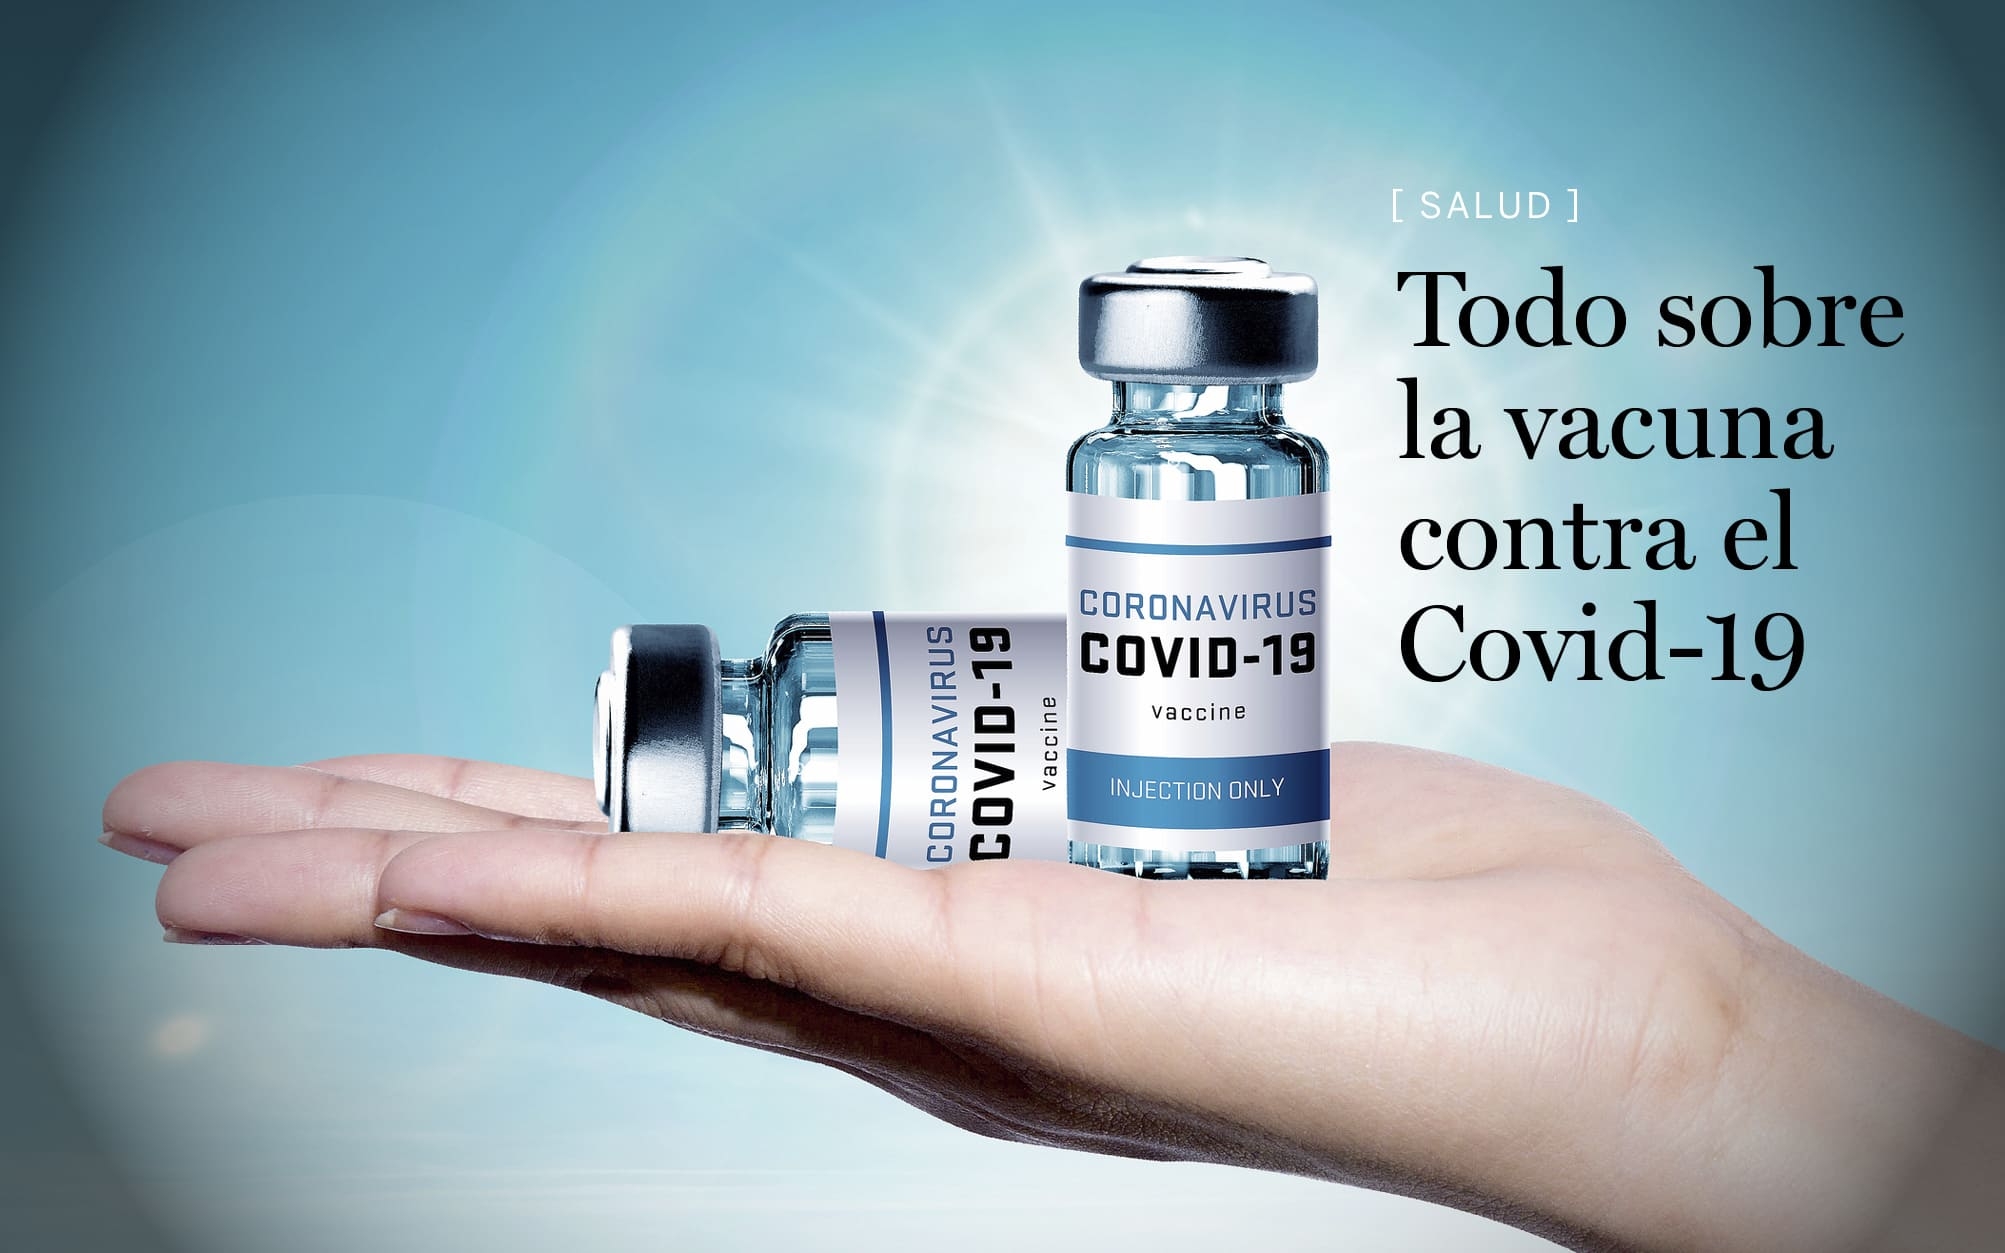 Todo sobre la vacuna del Covid-19 en las mujeres